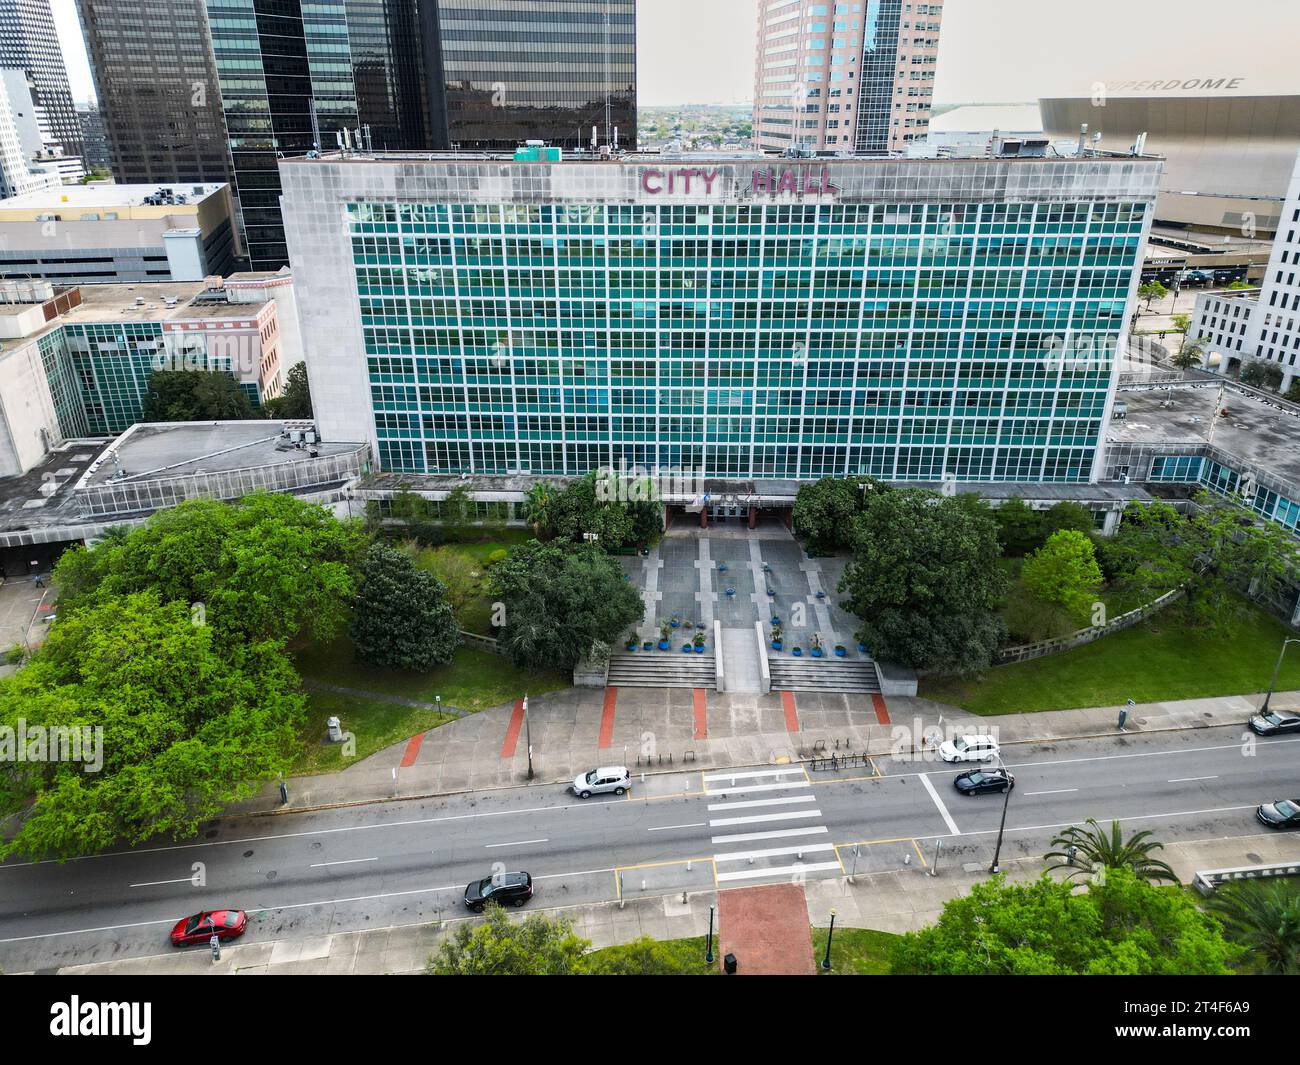 City Hall, New Orleans, Louisiana, USA Stock Photo